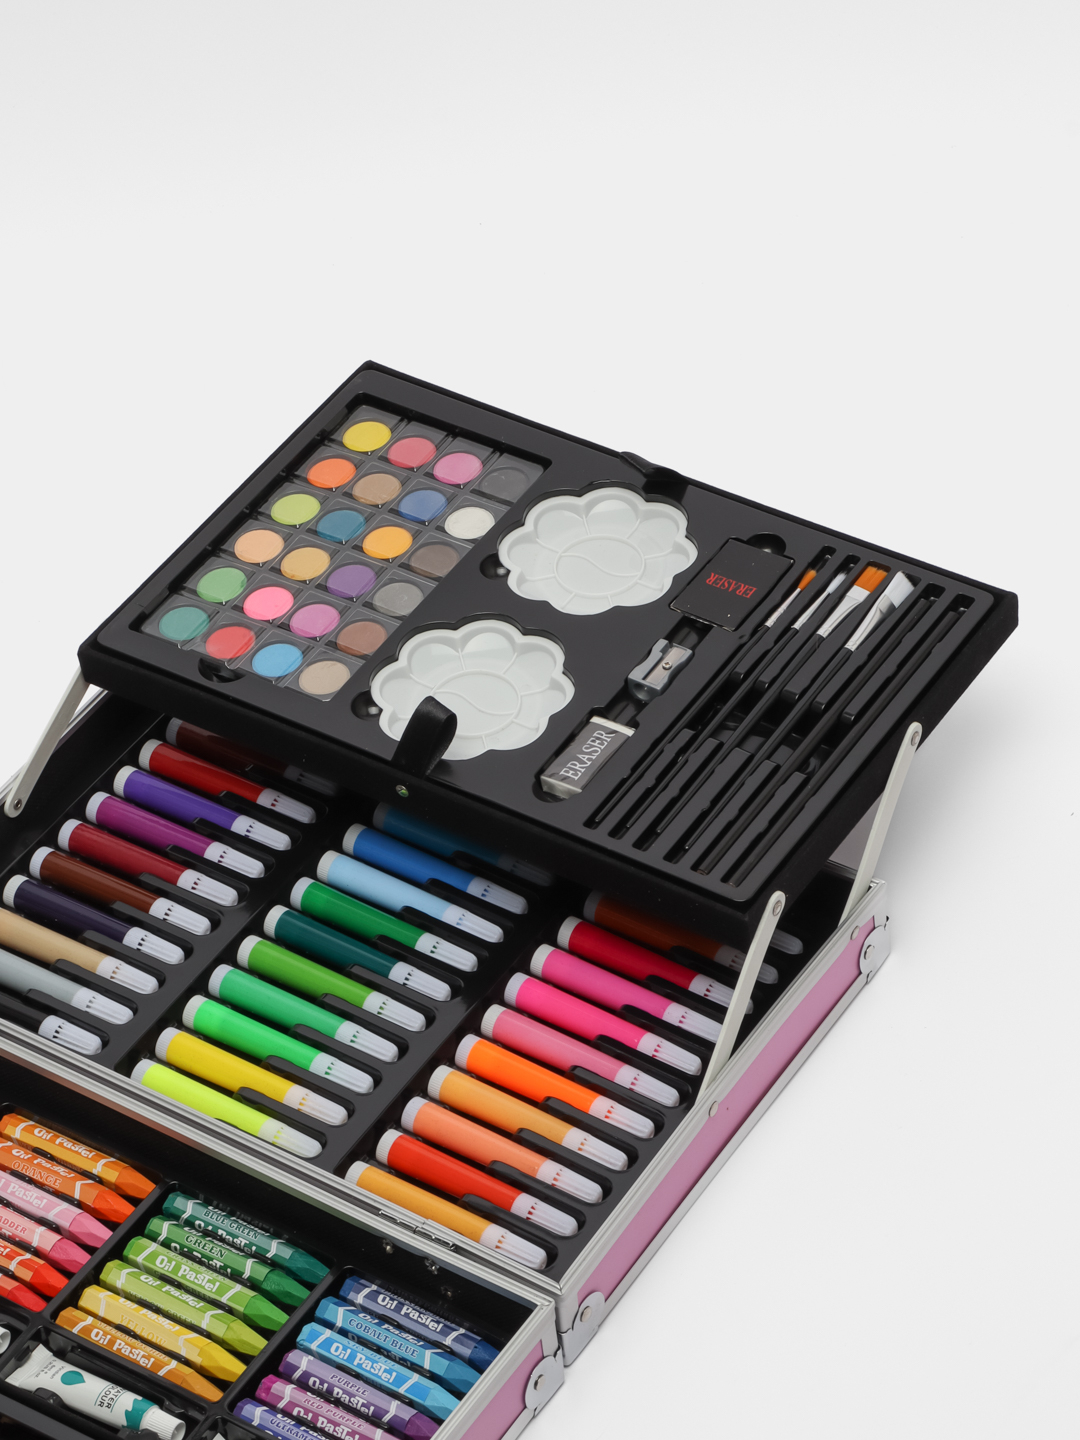 Набор для рисования и творчества, предметов 148/ Фломастеры, карандаши, краски / подарок/ чемодан